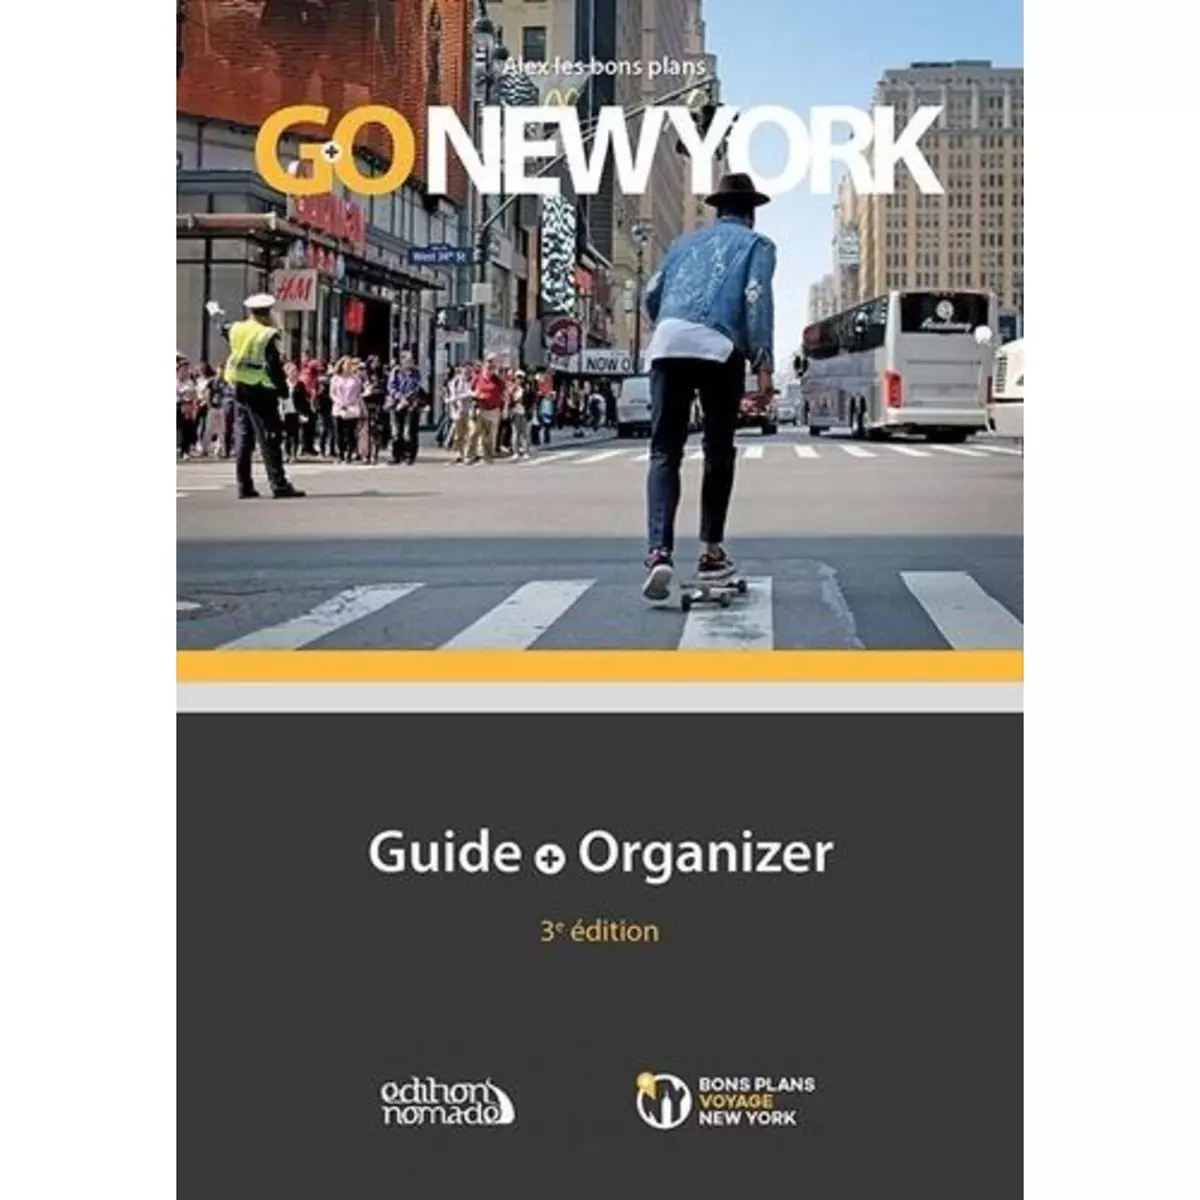  GO NEW YORK. GUIDE + ORGANIZER, 3E EDITION, Vendé Alexandre